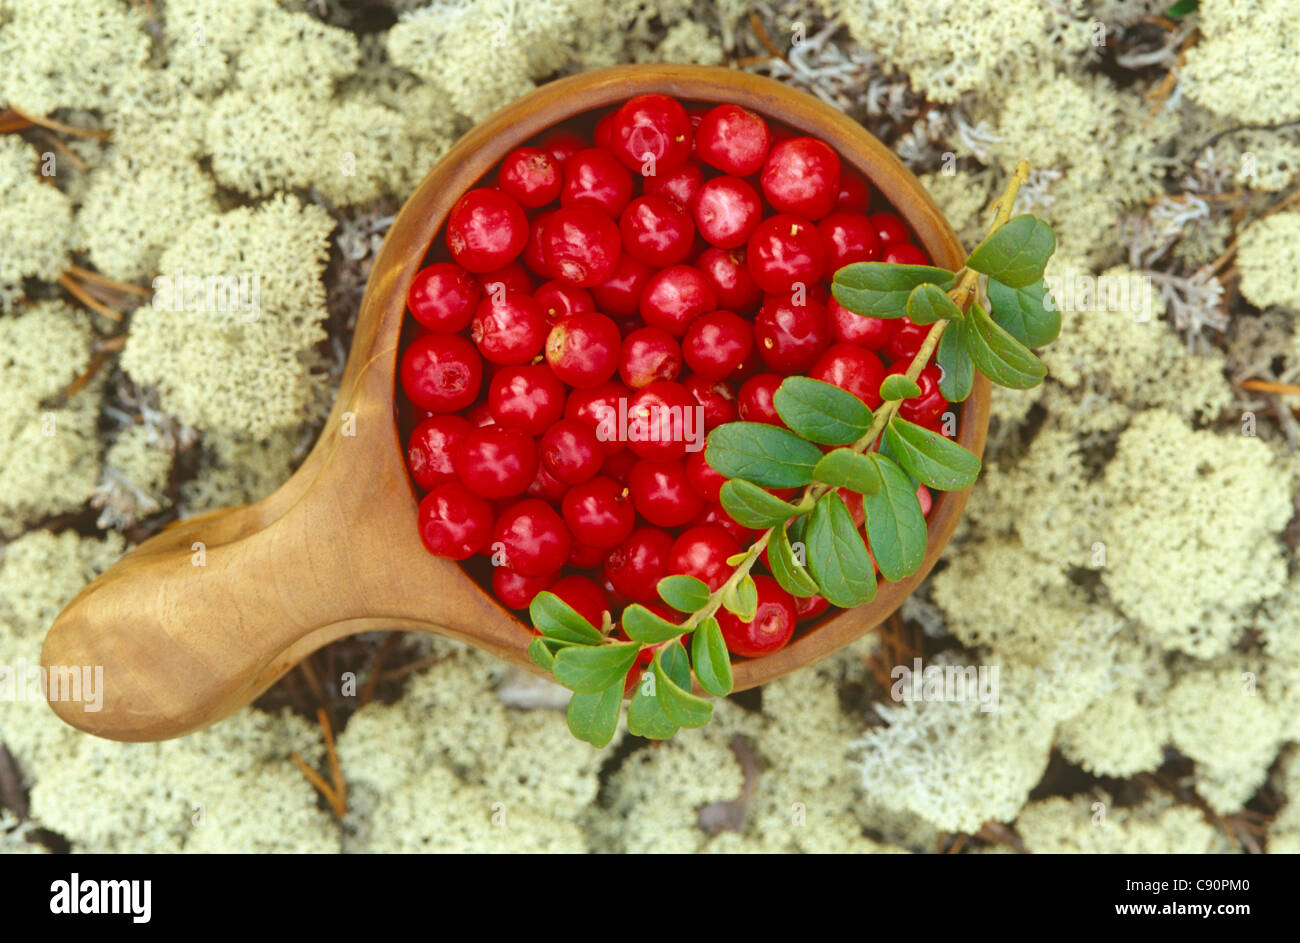 Vaccinium vitis-idaea tiene muchos nombres y los arándanos rojos frutos comestibles o medicinales tradicionales tienen un lingongerries Foto de stock